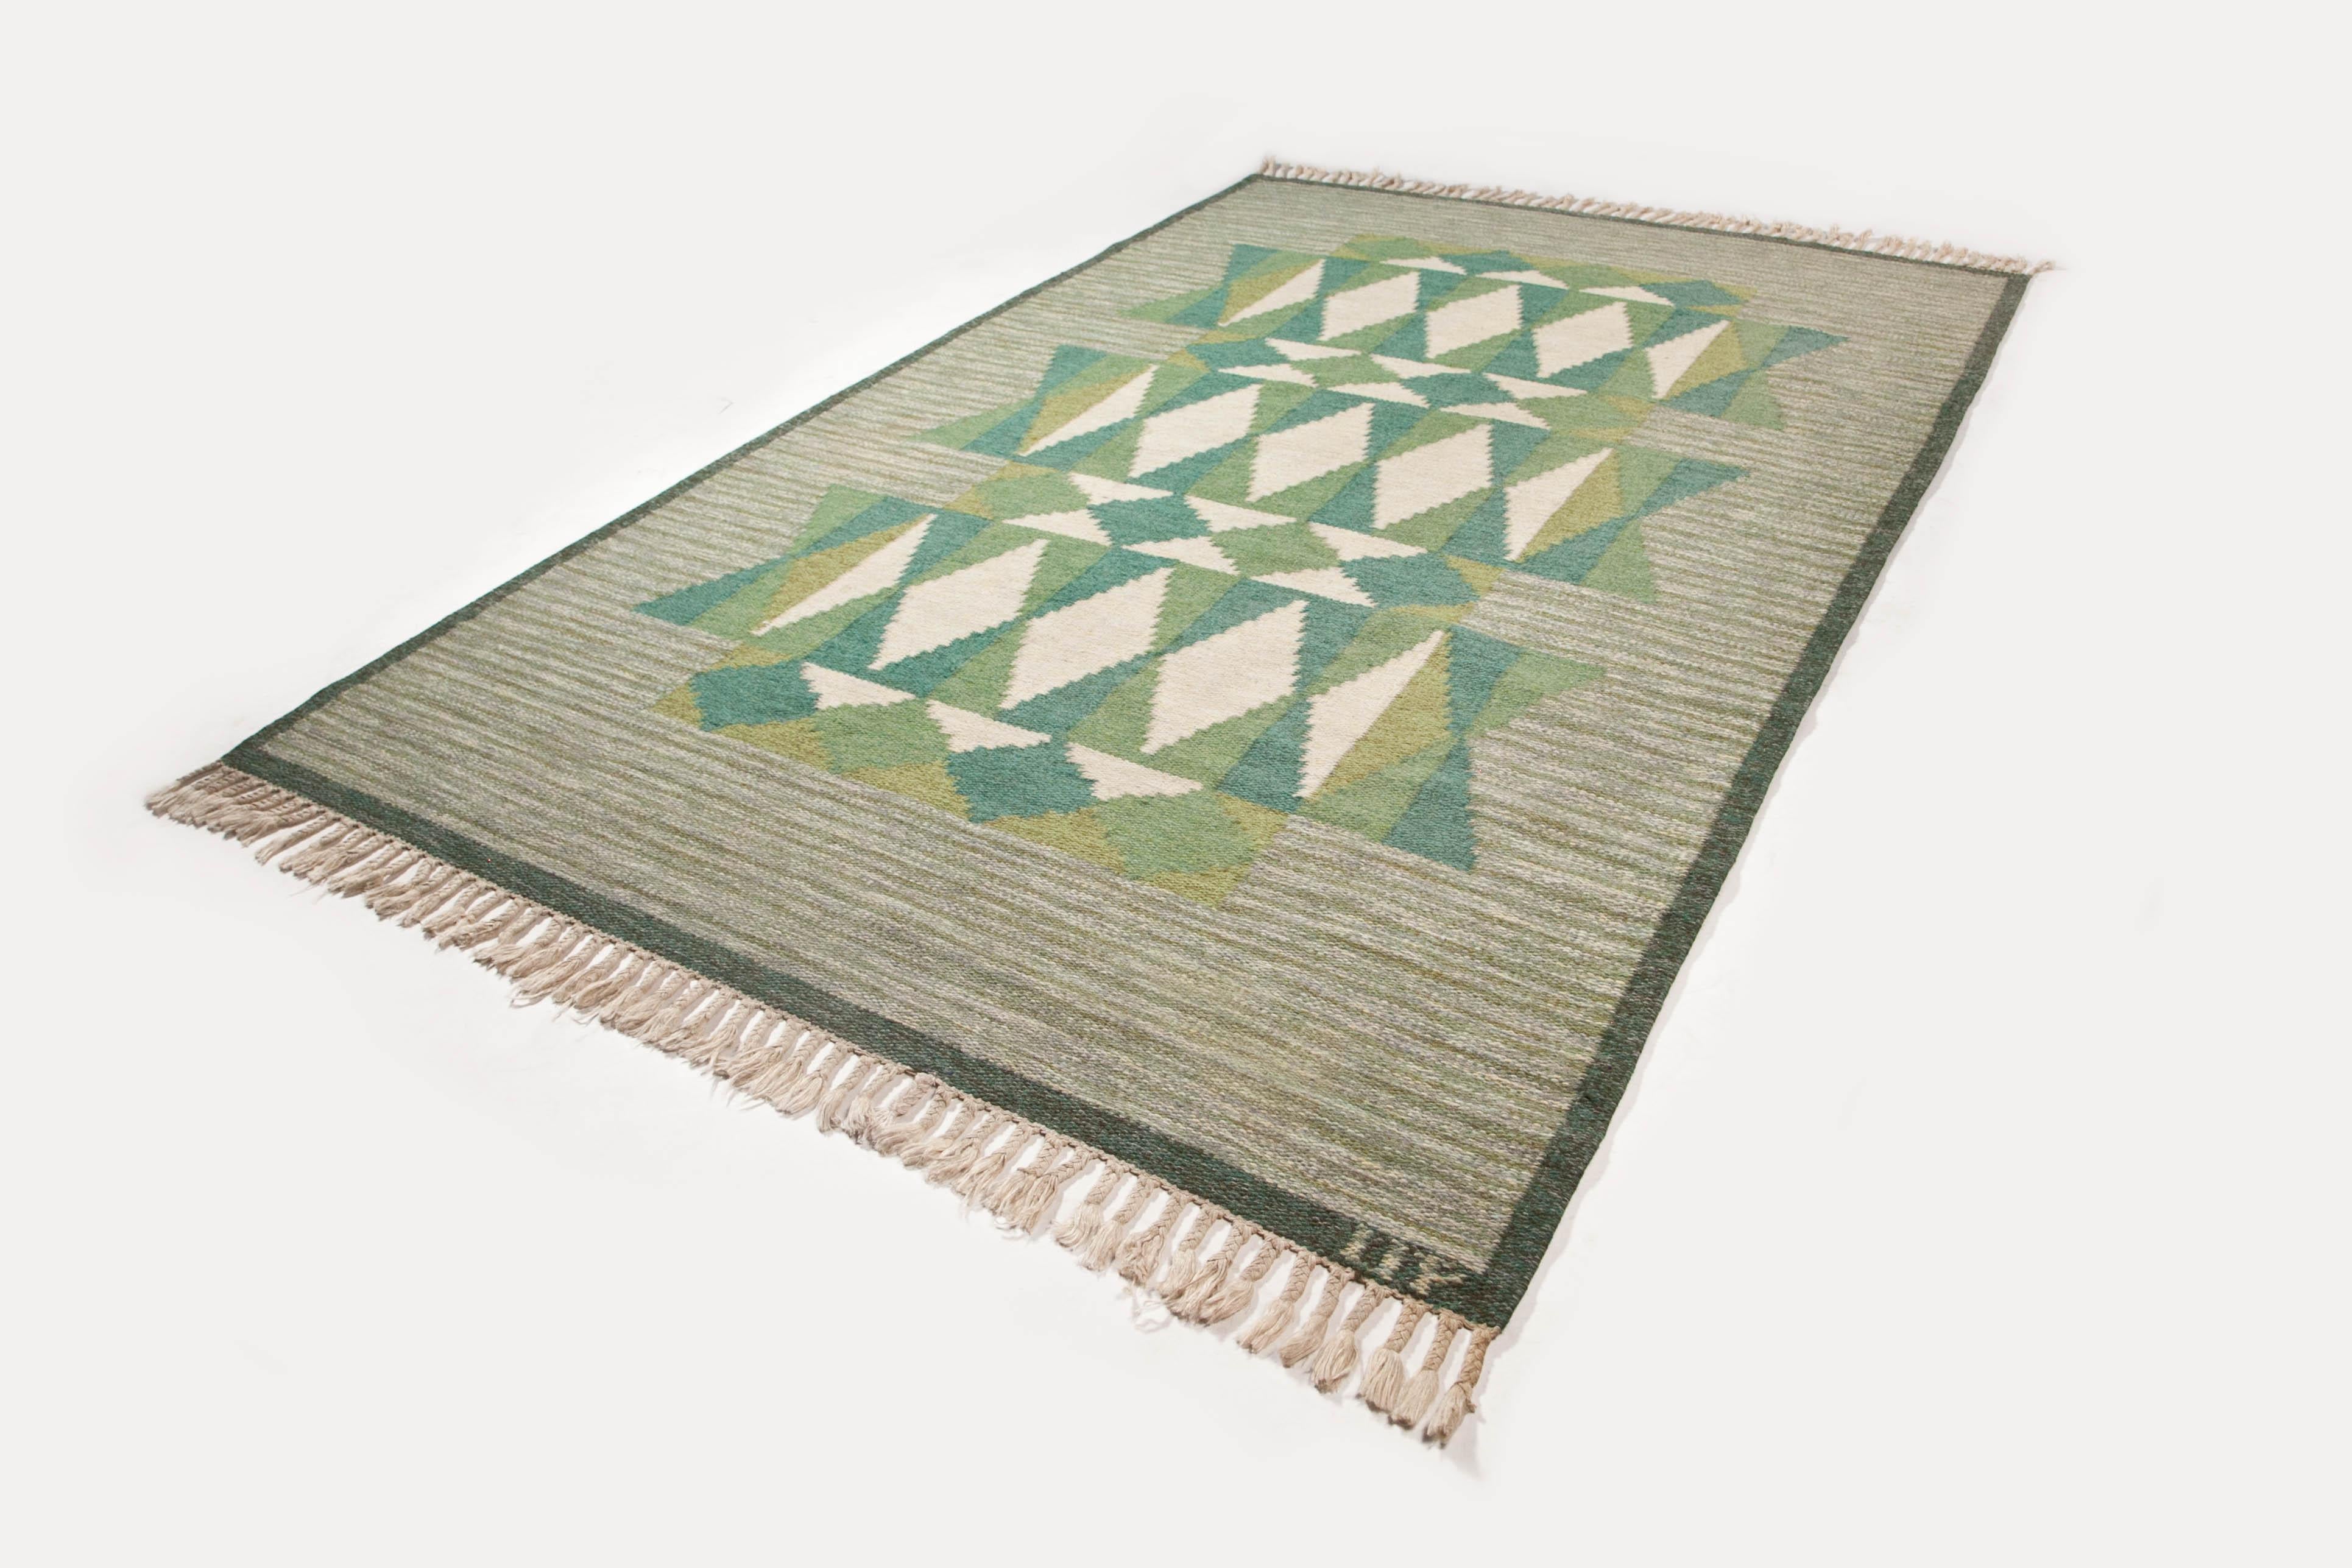 Ulla Parkdal - Swedish flat weave rug, Sweden 1960's - 94.5